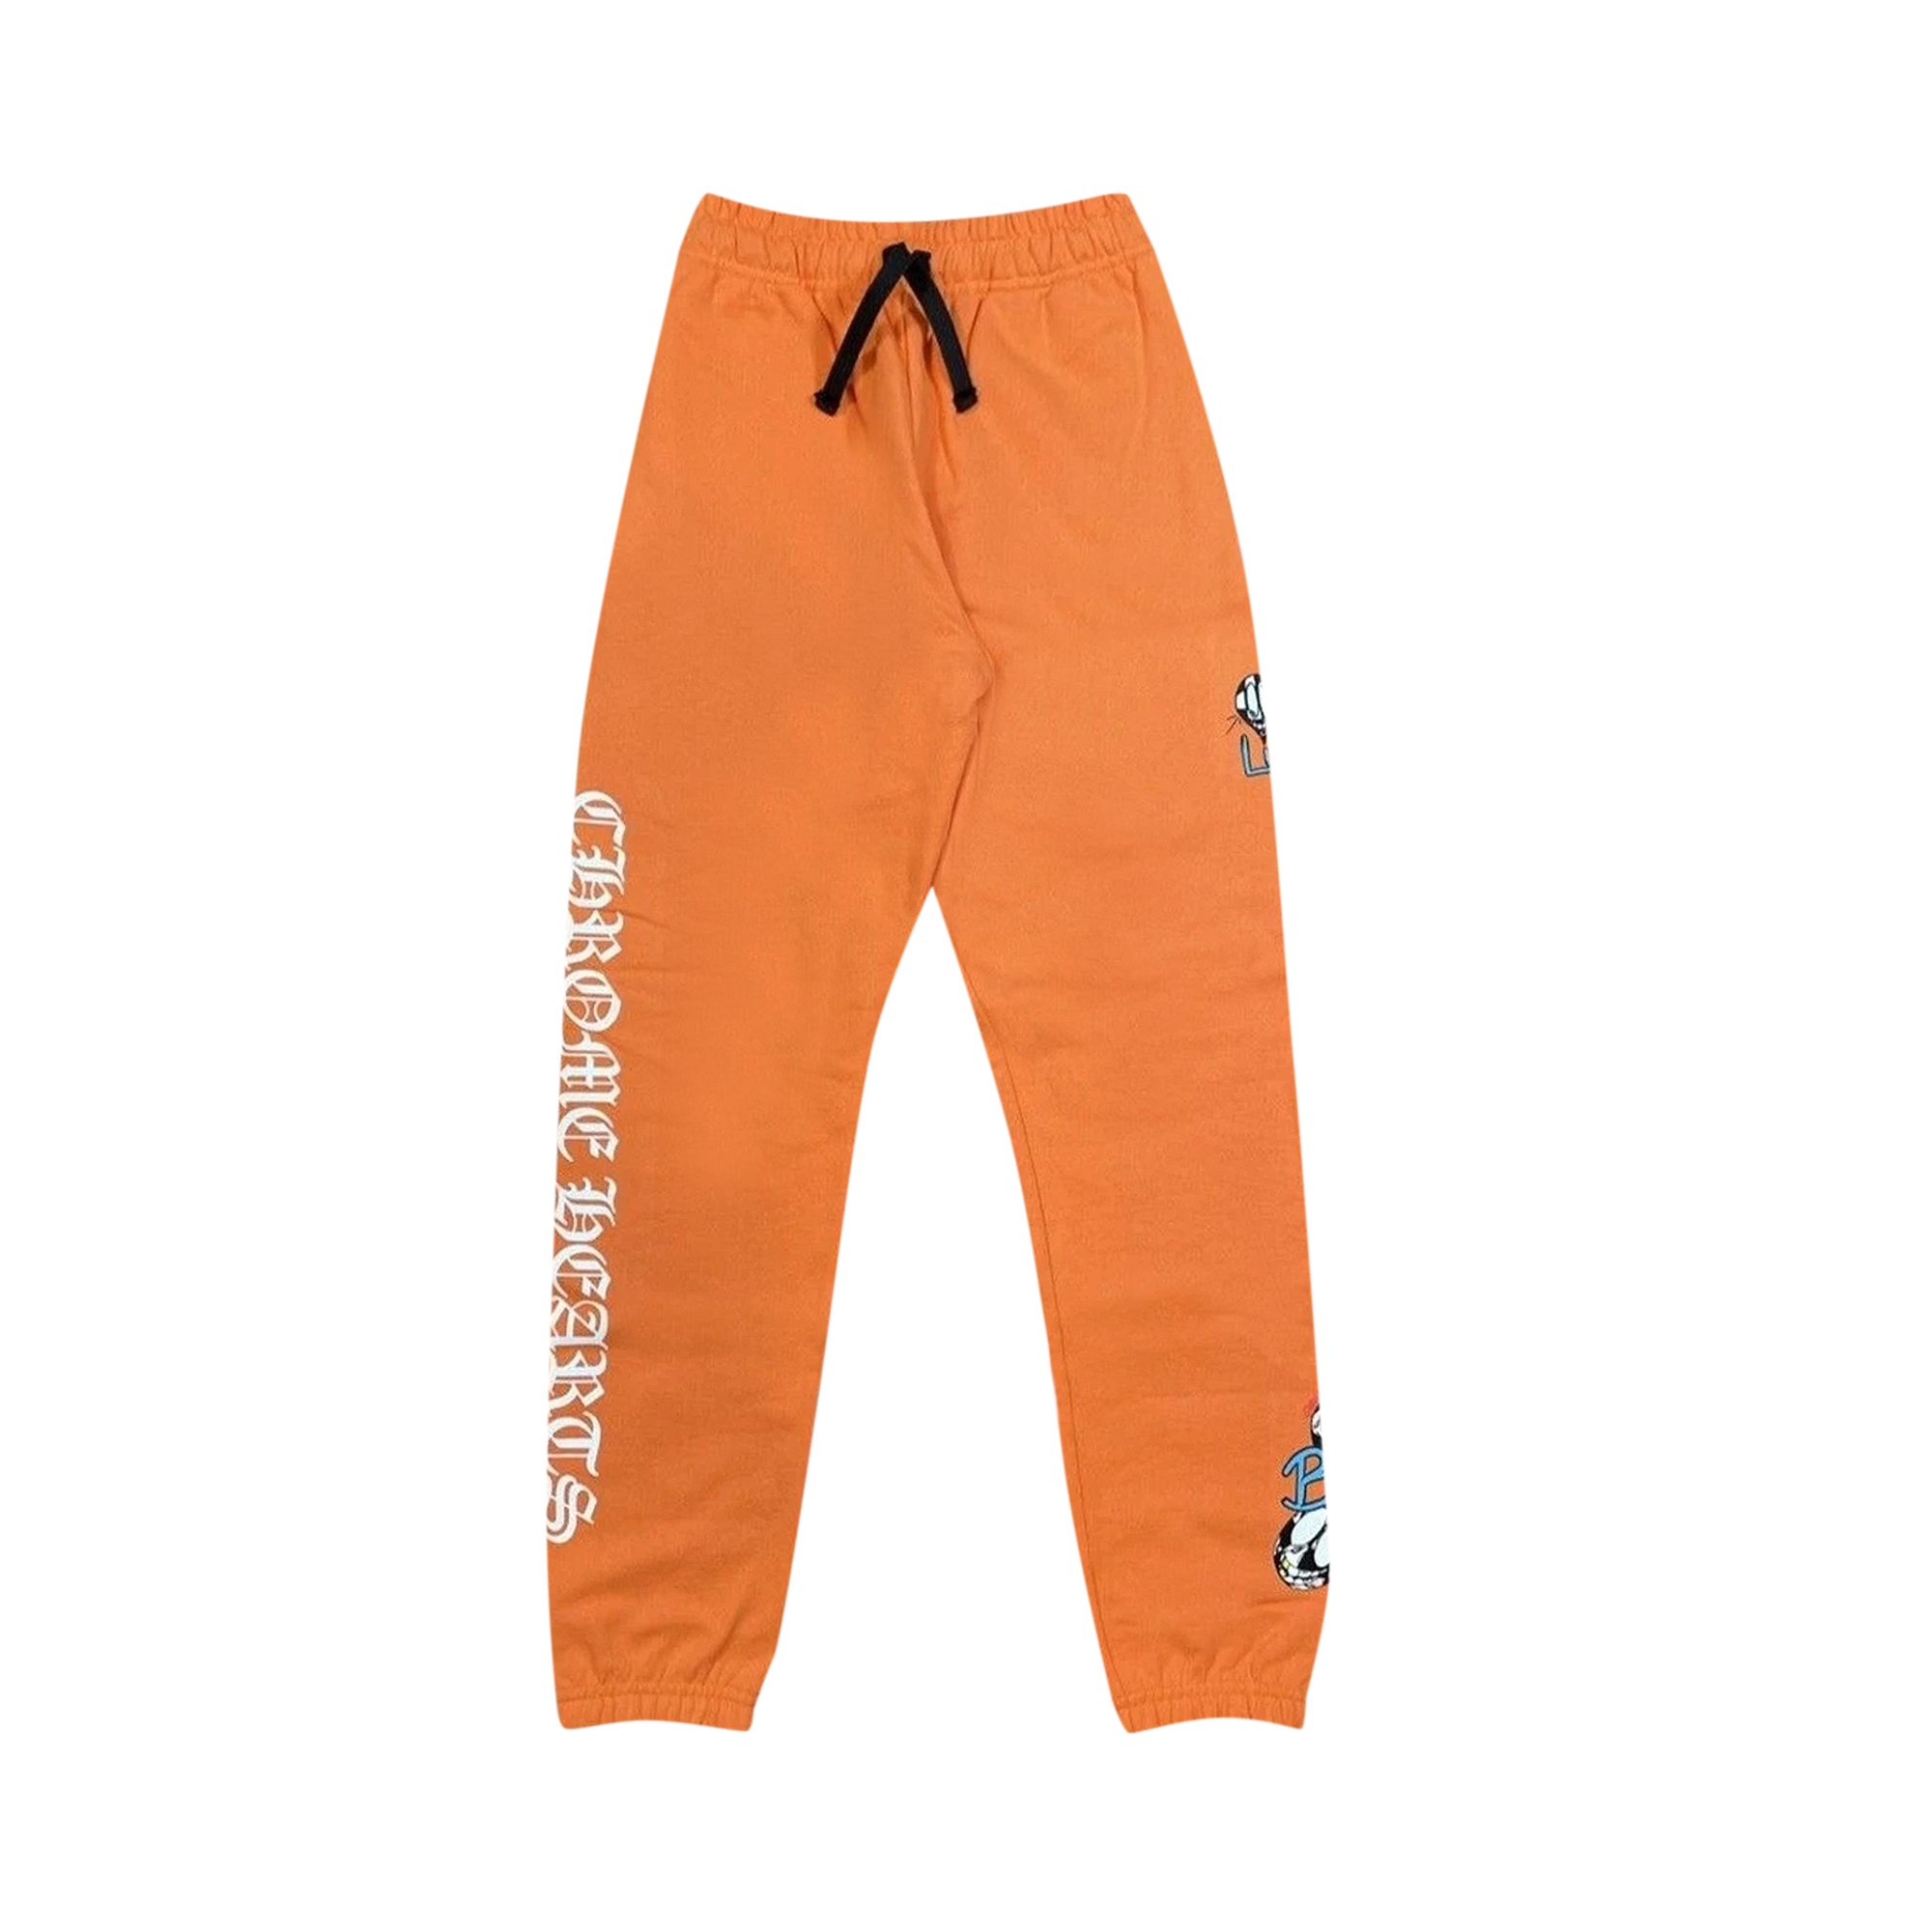 Спортивные штаны Chrome Hearts x Matty Boy PPO Link & Build, оранжевые цена и фото